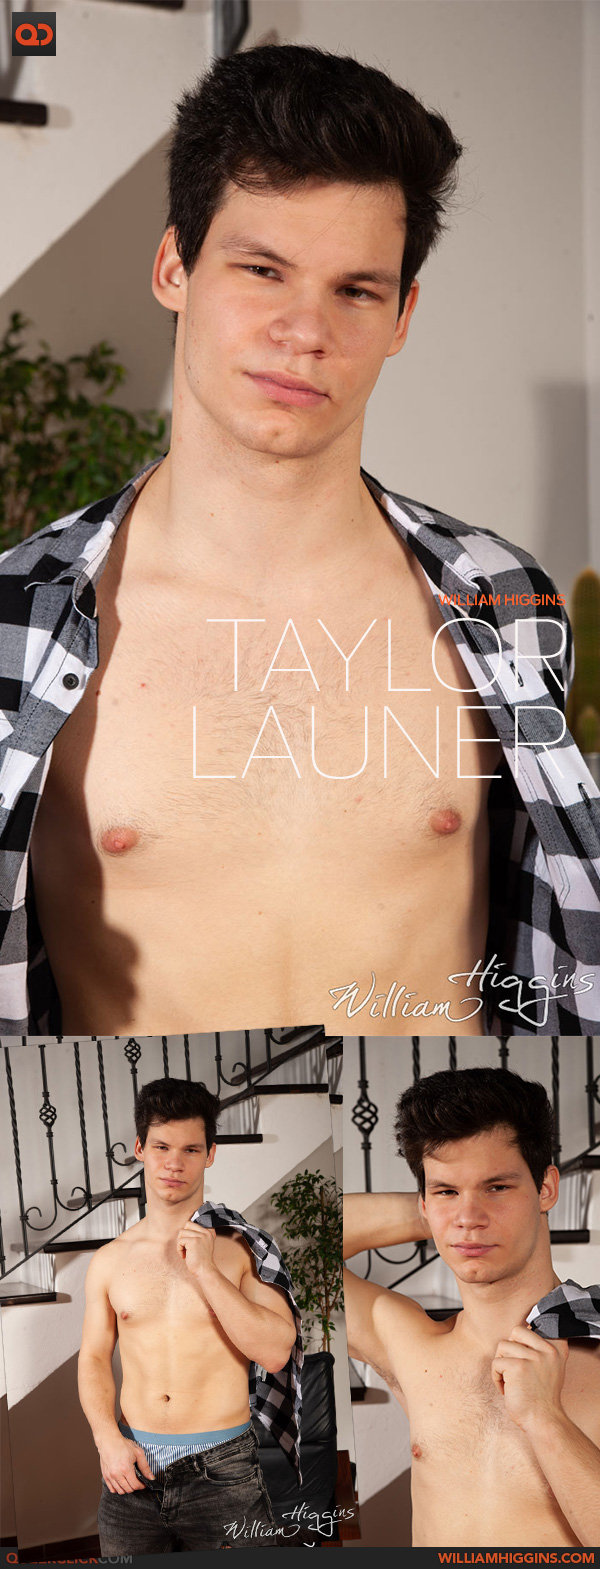 William Higgins: Taylor Launer